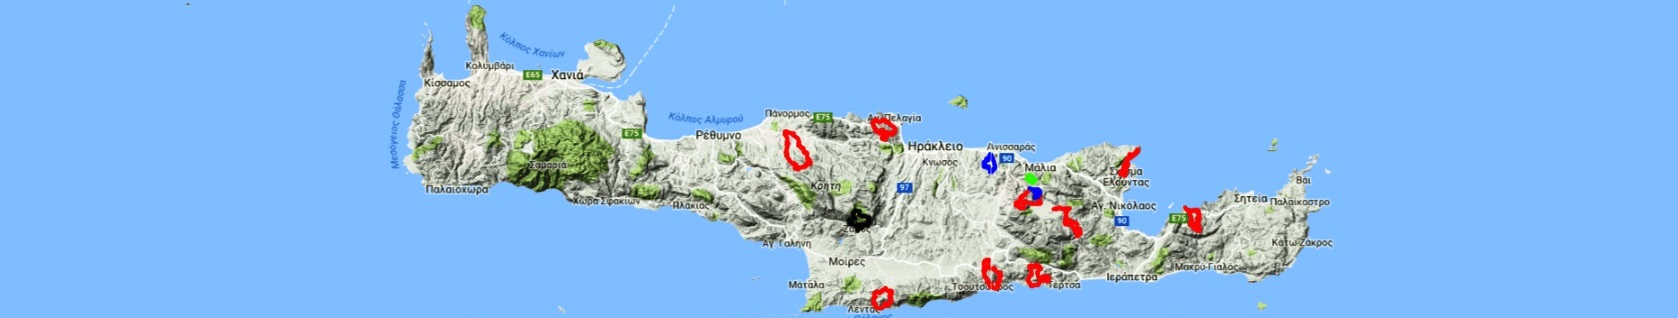 interactive-maps-crete